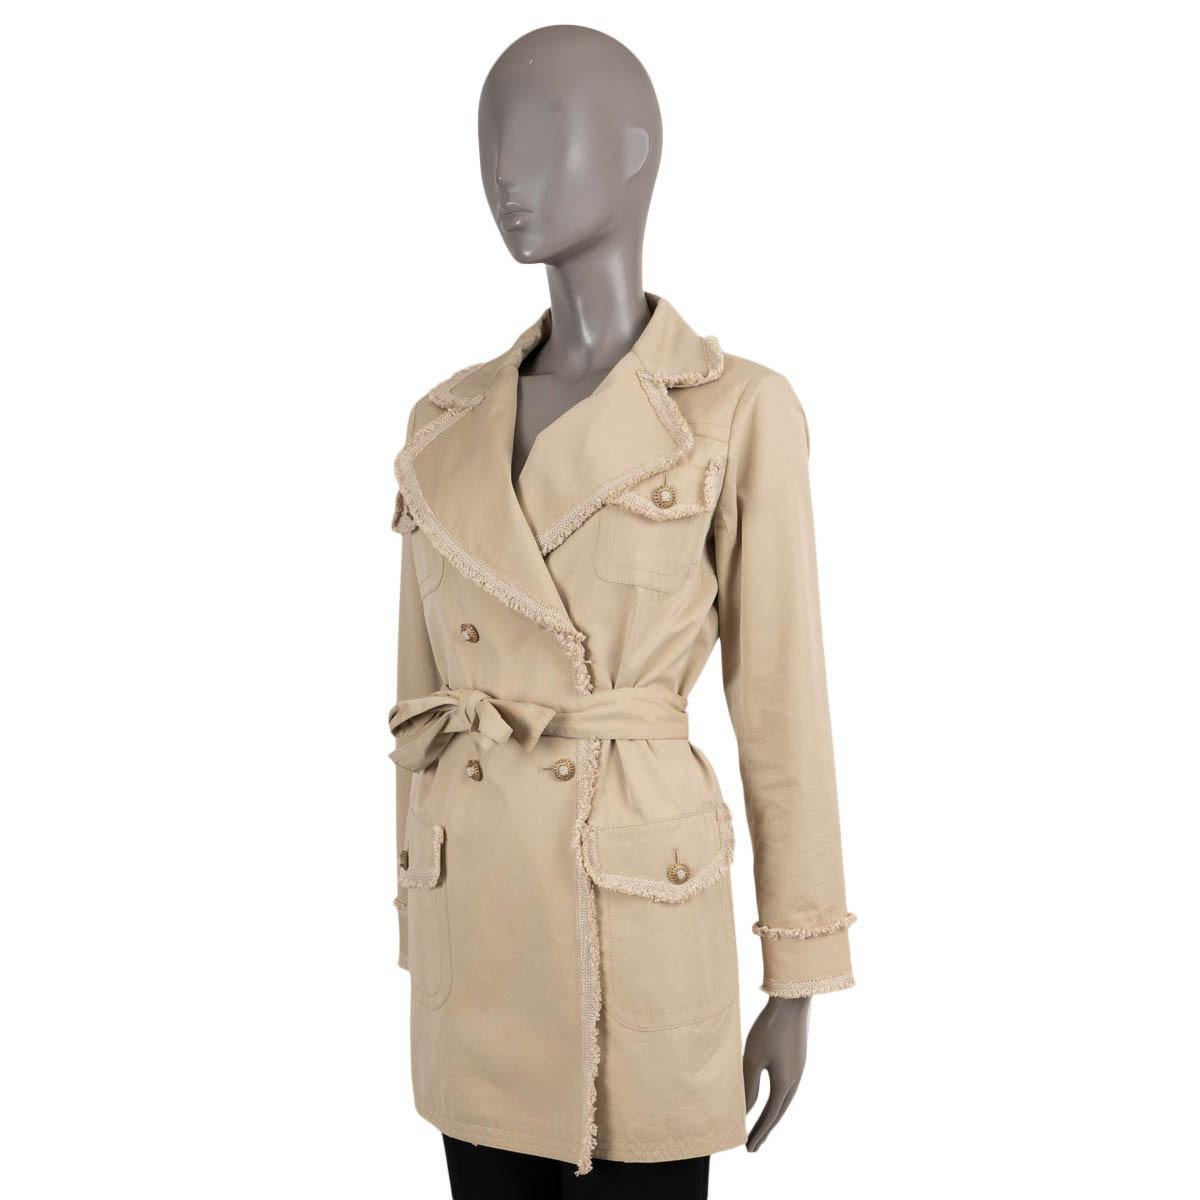 Trench-coat 100% authentique de Chanel en coton beige (70%) et soie (30%). Il présente des bordures en tweed effiloché, des revers en pointe et quatre poches à rabat boutonnées. Il se ferme à l'aide d'une double rangée de boutons et d'une ceinture